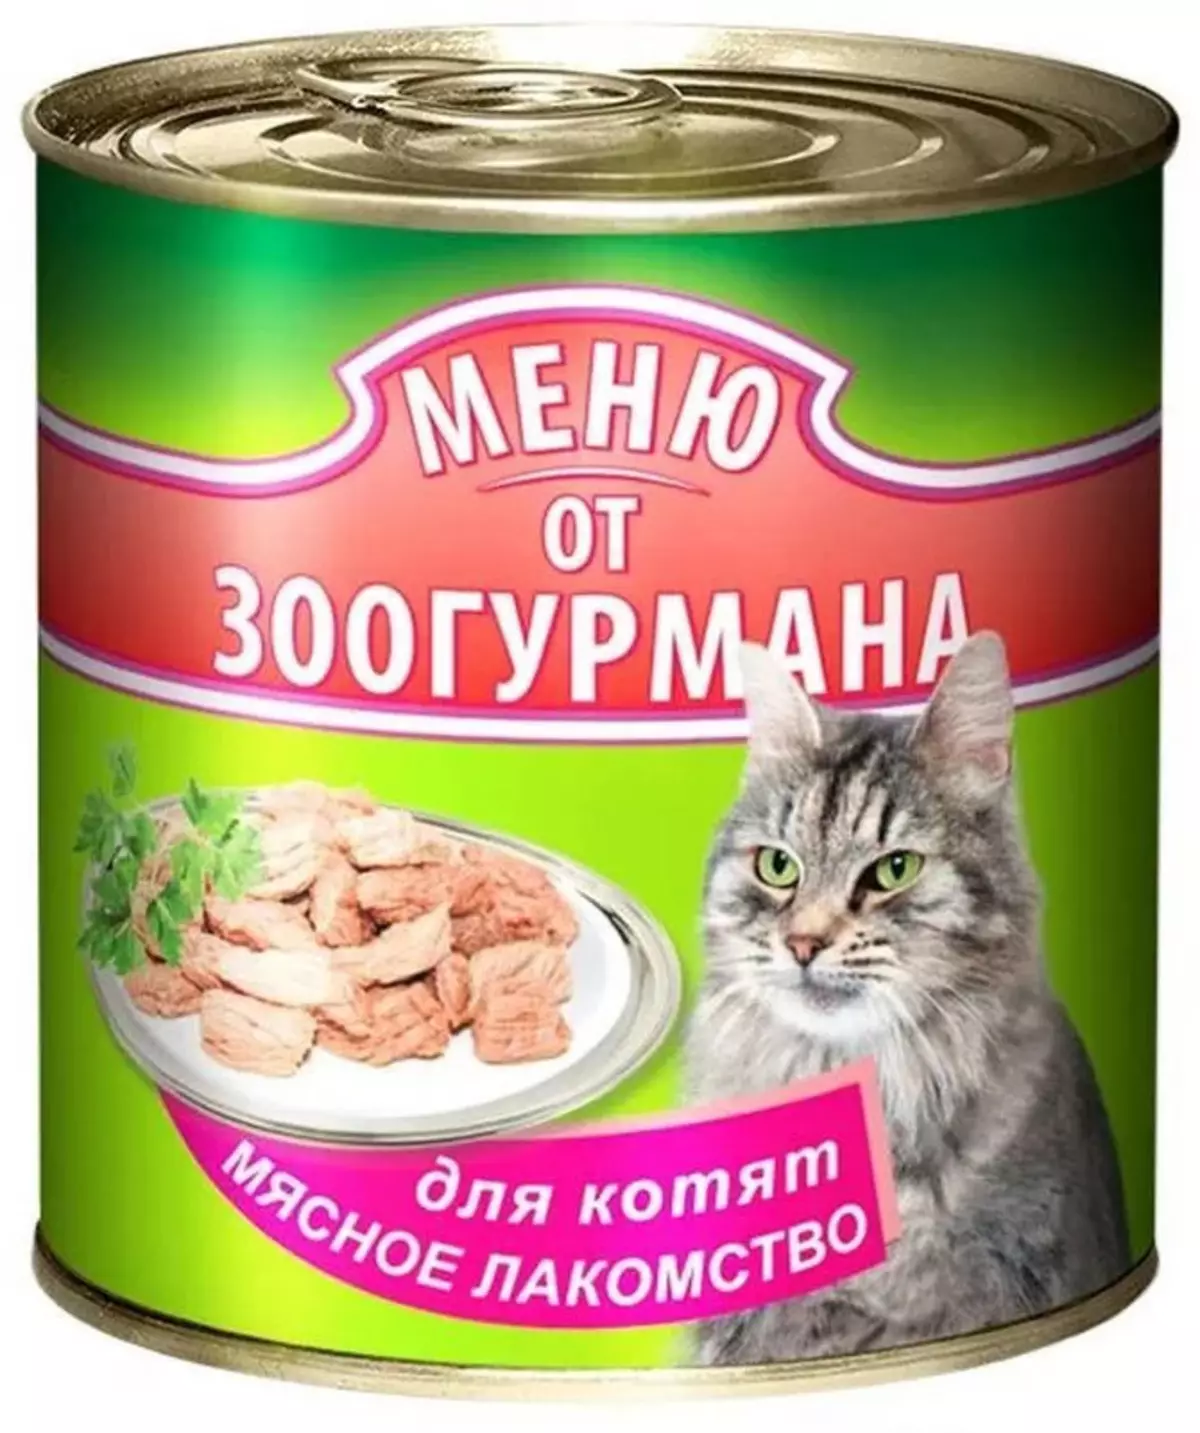 Կատուն կատուների համար «Zoogurman». Չոր եւ խոնավ կերակրման համար ստերիլիզացված կատուների եւ kittens- ի համար, դասի ամբողջականության անասնակերի կազմը: Վերանայման ակնարկներ 22633_26